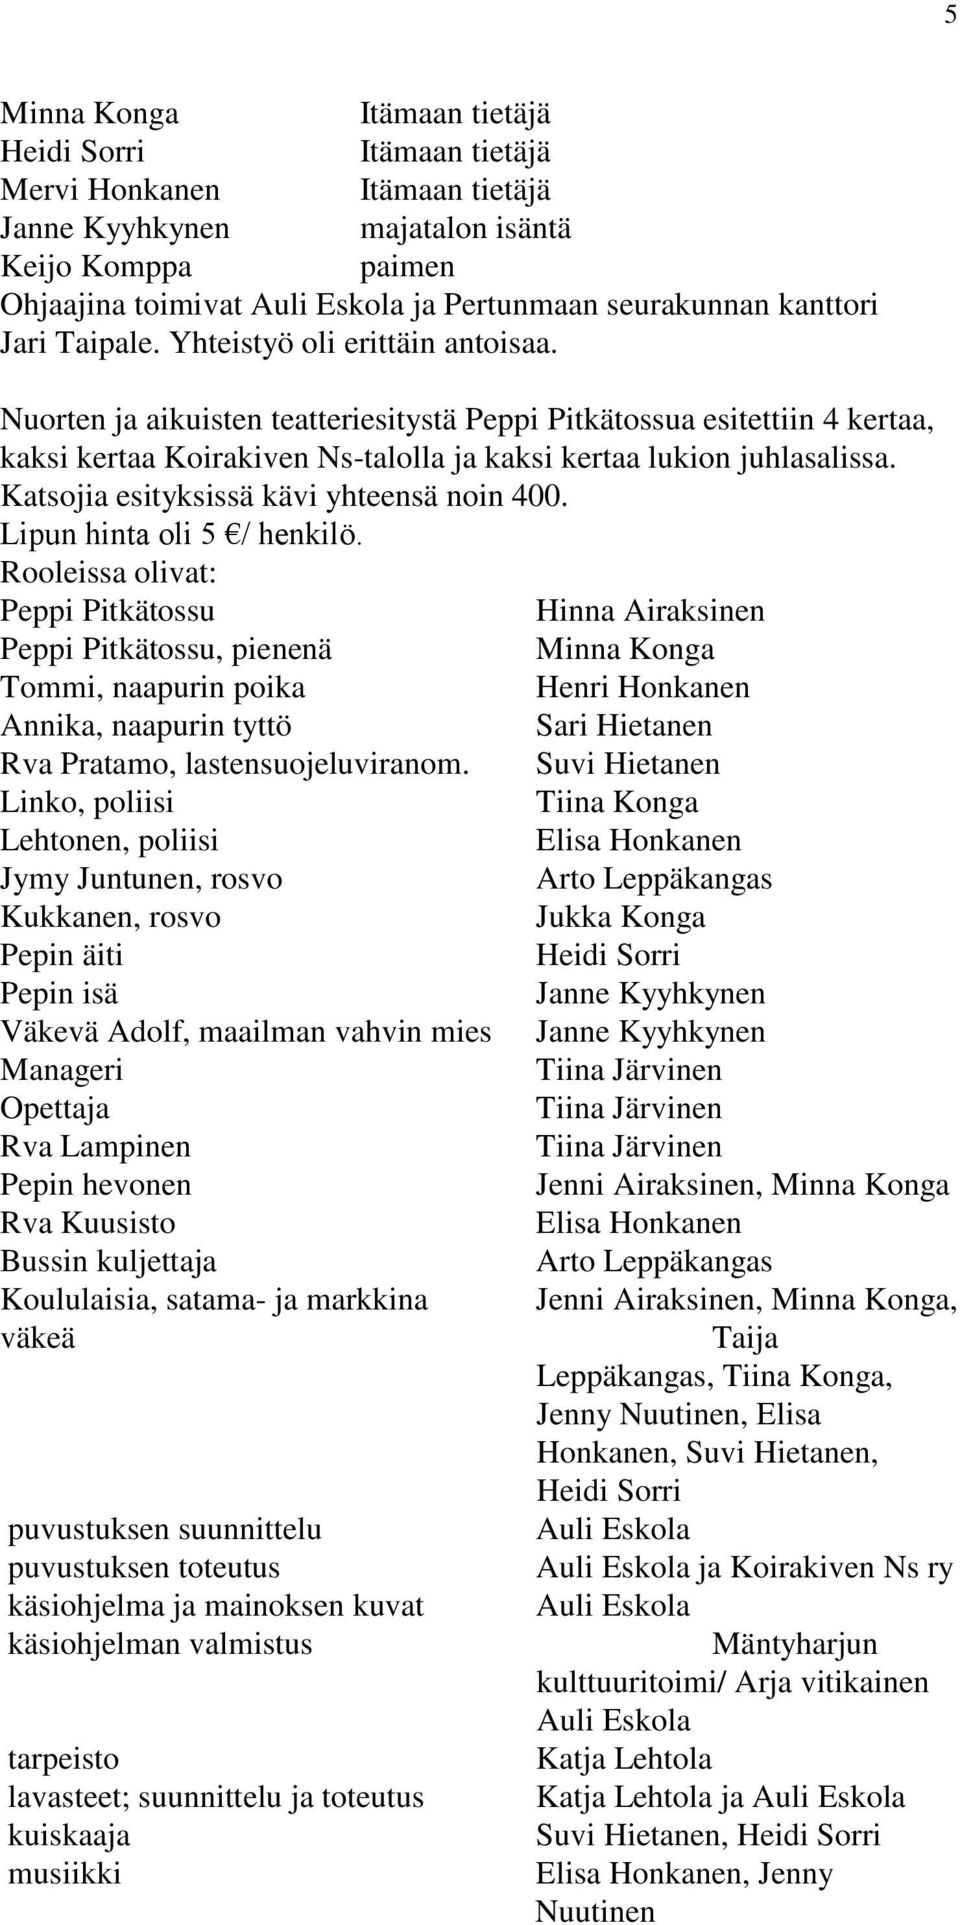 Nuorten ja aikuisten teatteriesitystä Peppi Pitkätossua esitettiin 4 kertaa, kaksi kertaa Koirakiven Ns-talolla ja kaksi kertaa lukion juhlasalissa. Katsojia esityksissä kävi yhteensä noin 400.